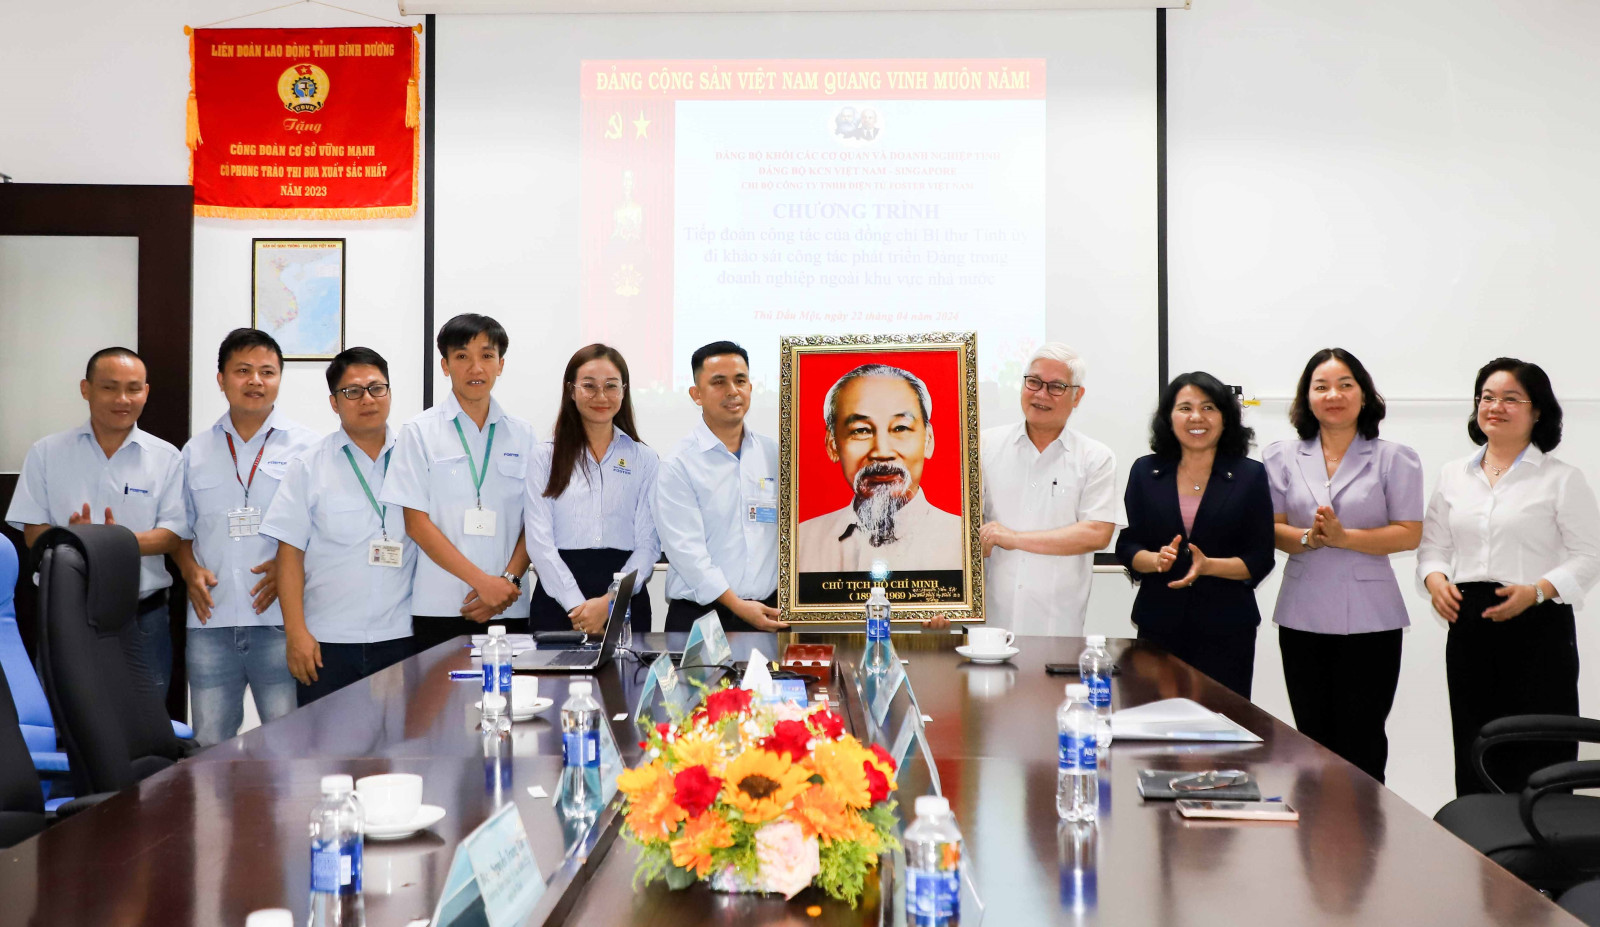 Bí thư Tỉnh ủy Nguyễn Văn Lợi trao tặng bức tranh Bác Hồ cho lãnh đạo, Chi bộ Công ty TNHH Điện tử Foster Việt Nam.